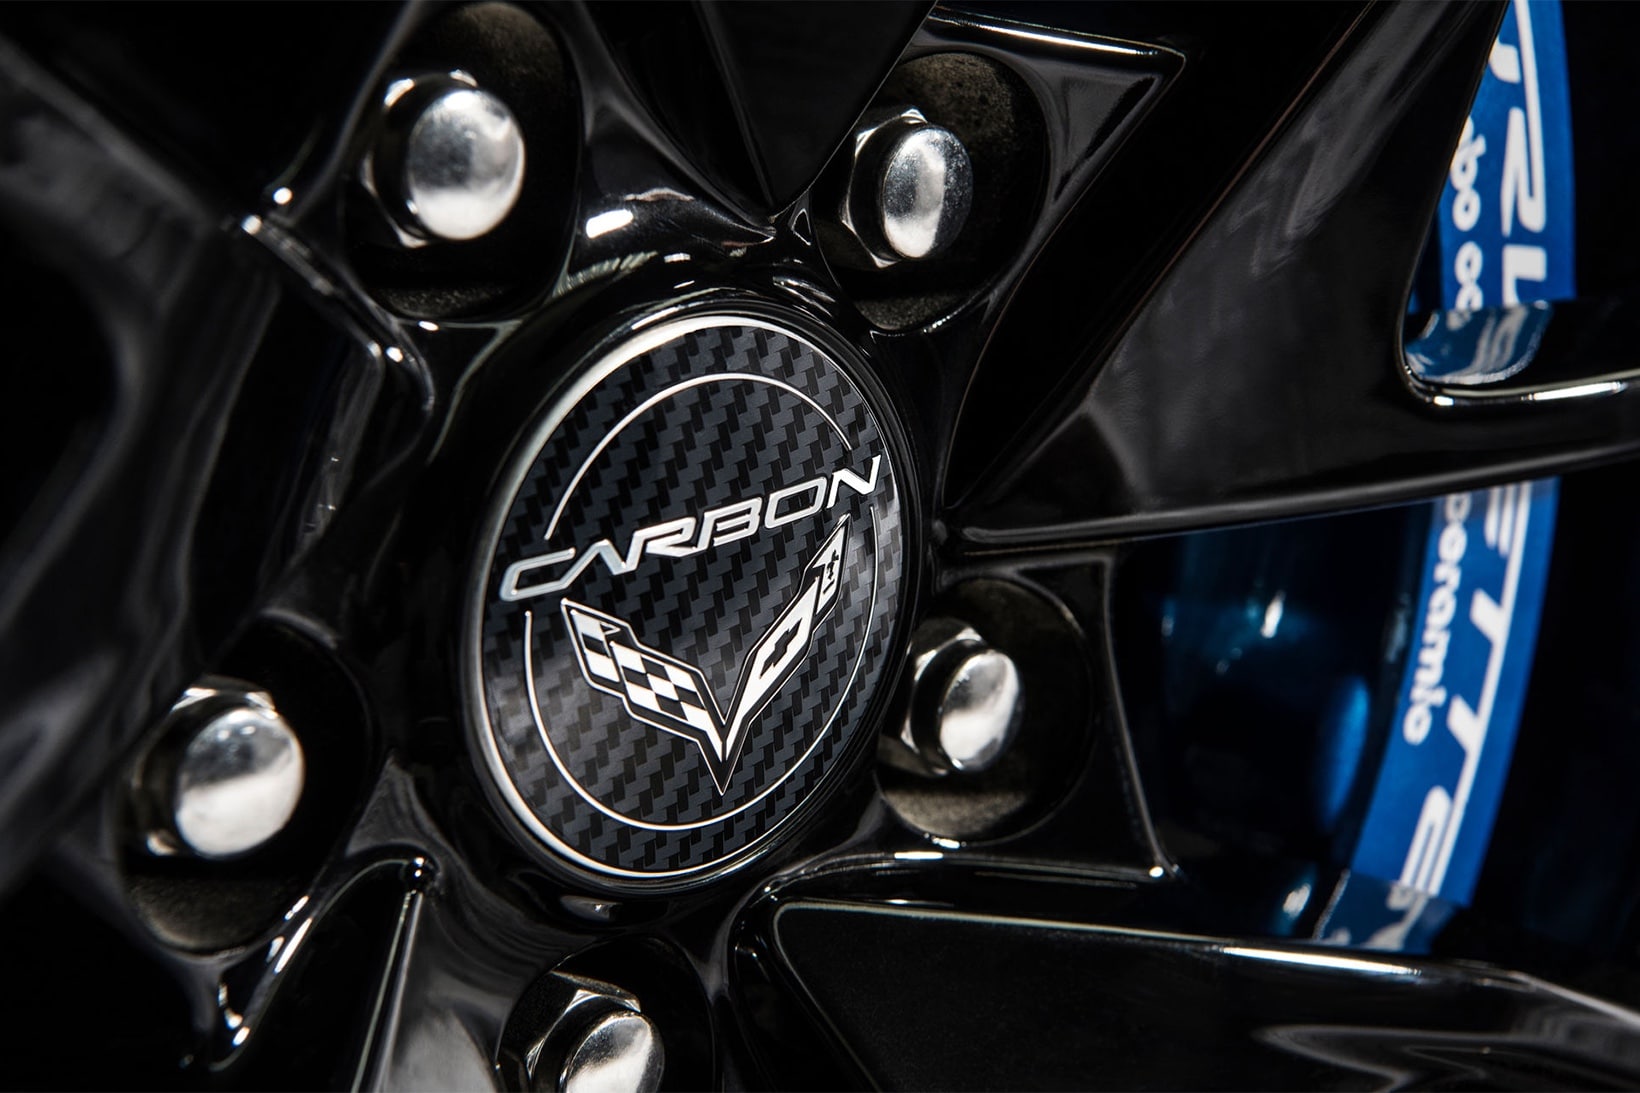 2018 C7 Corvette Carbon 65